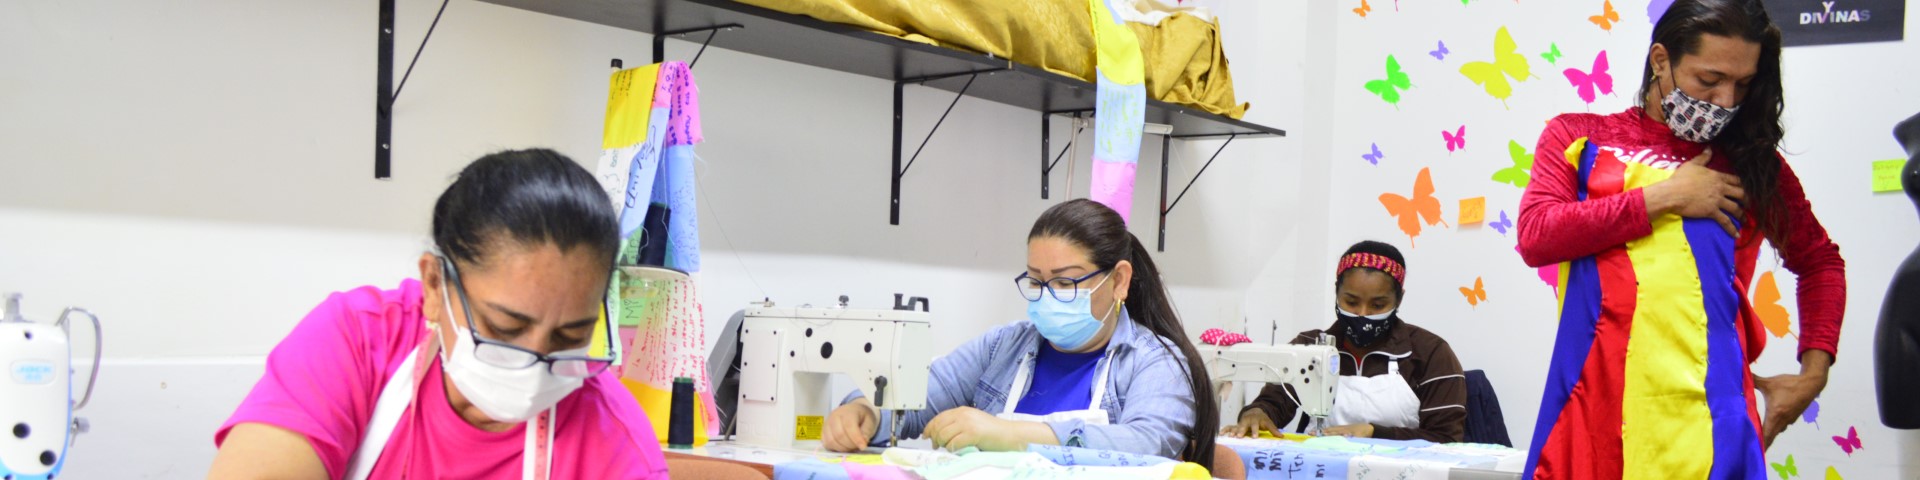 Frauen arbeiten an Nähmaschinen, eine Person probiert ein Kleid an.